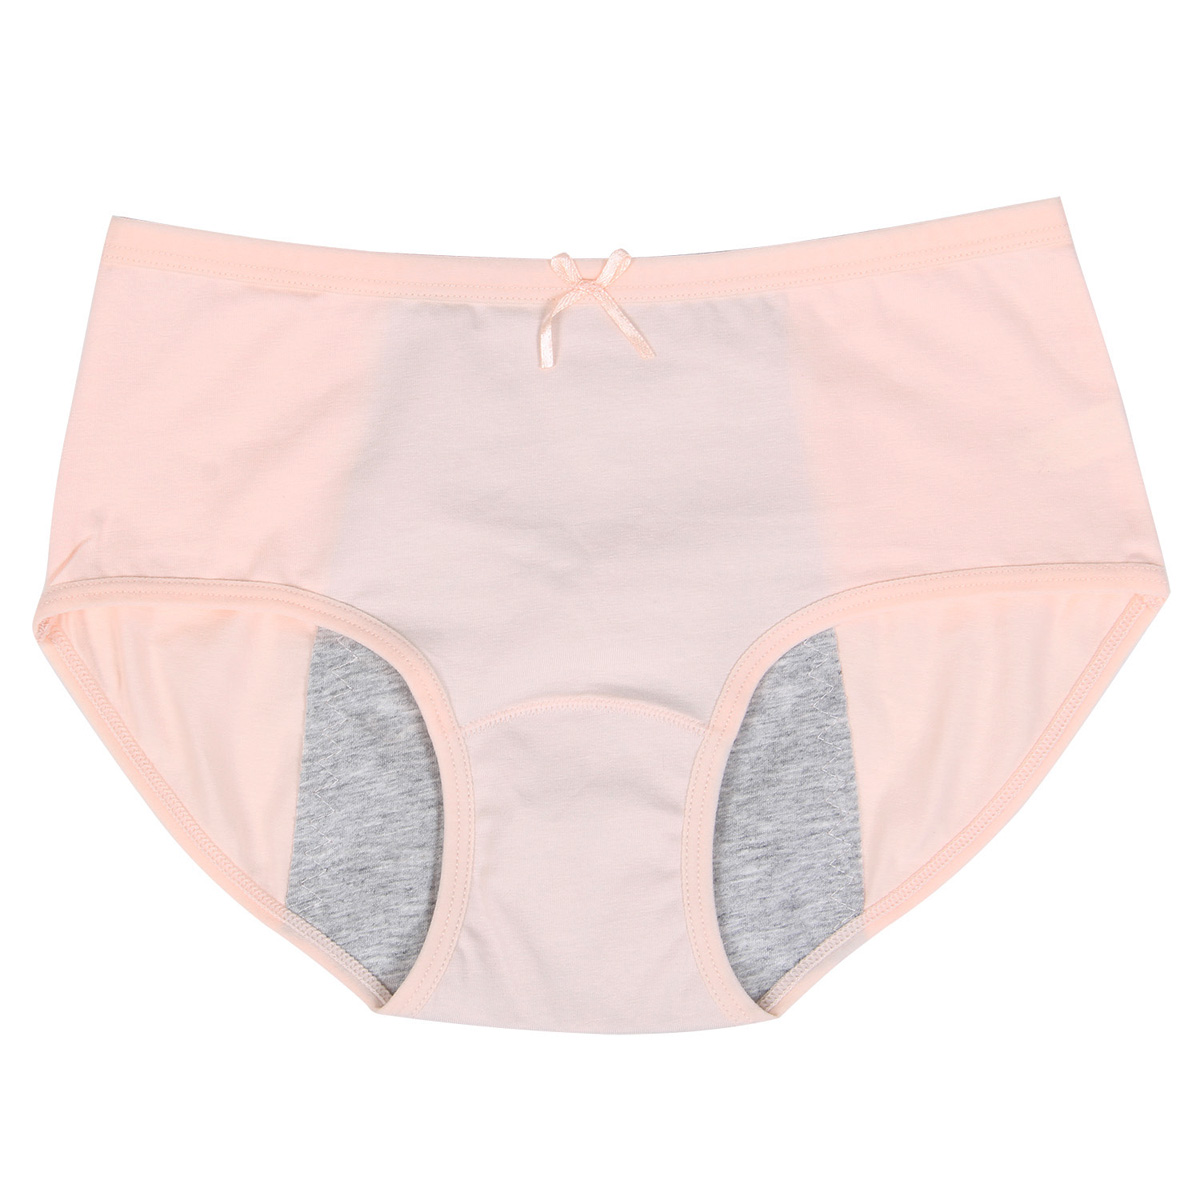 5 Pack Womens Ladies Period Panties Leak Proof Cotton Briefs Menstrual Underwear Ebay